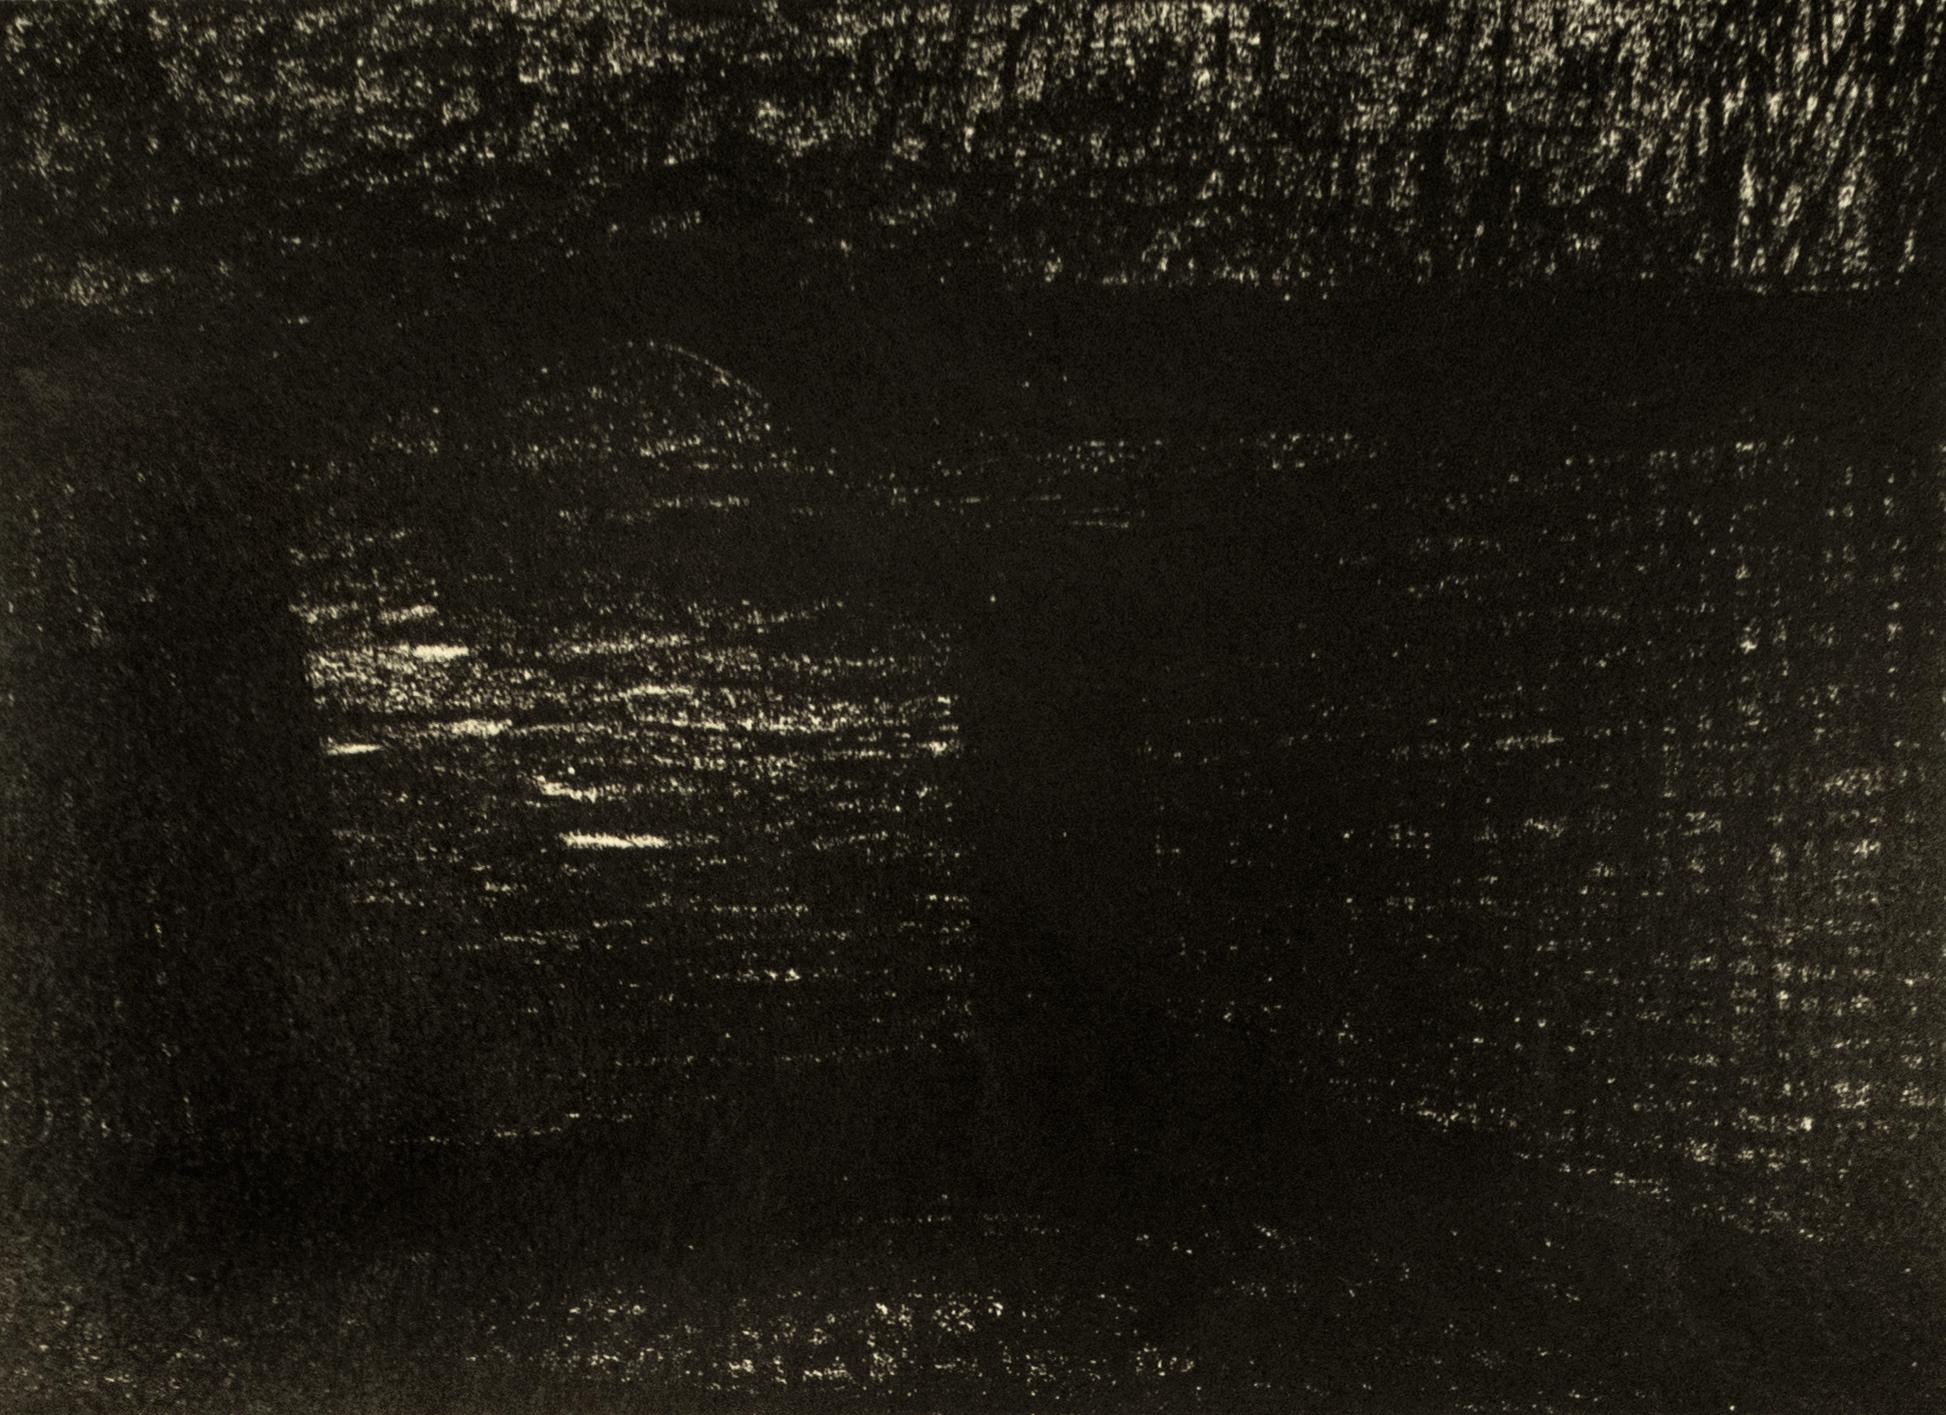 Henry Moore Abstract Print – Bridge: abstrakte schwarze Zeichnung nach Auden-Gedicht und Yorkshire-Landschaft